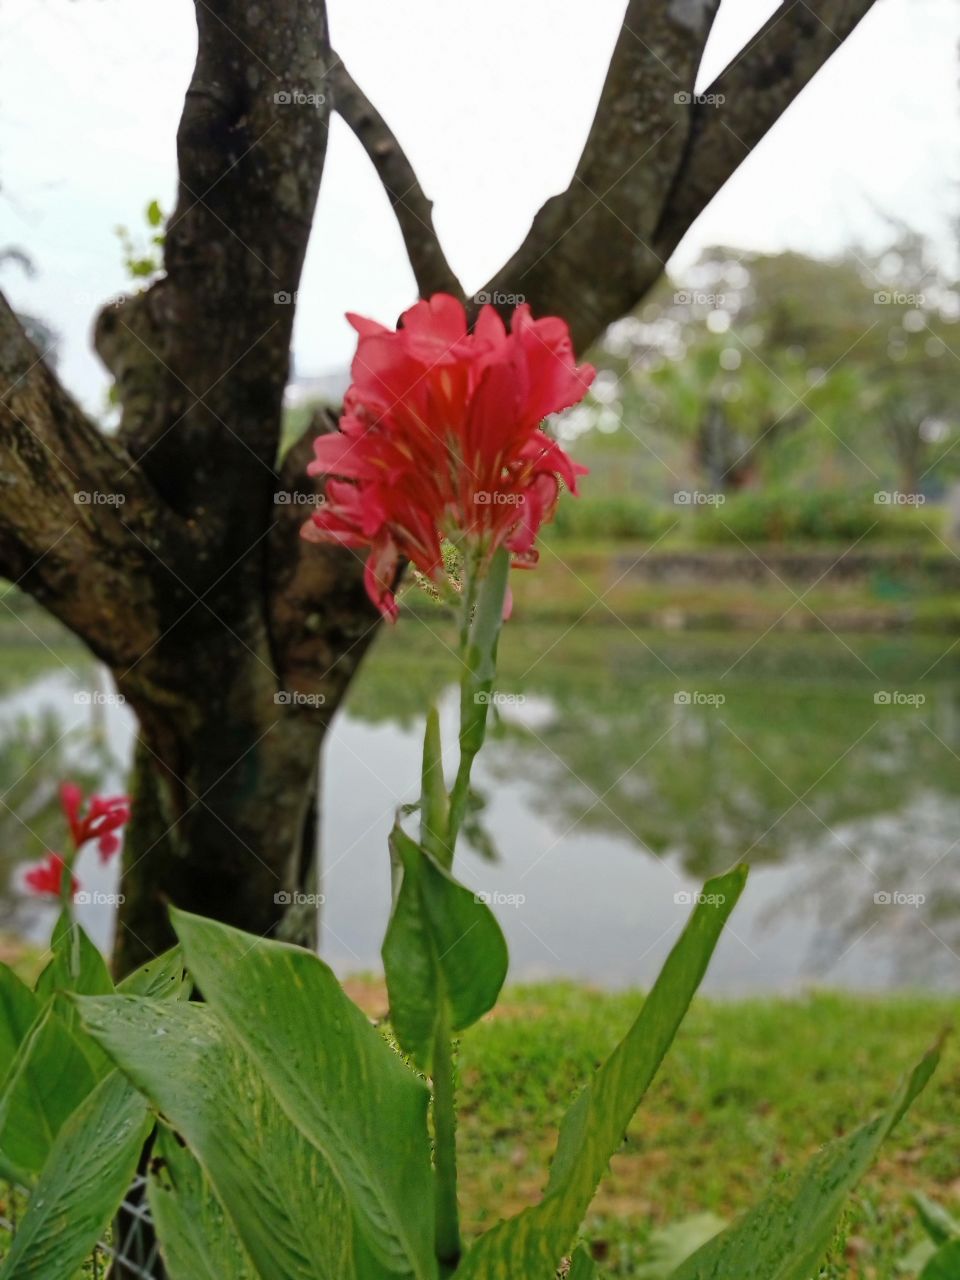 Lovely flower